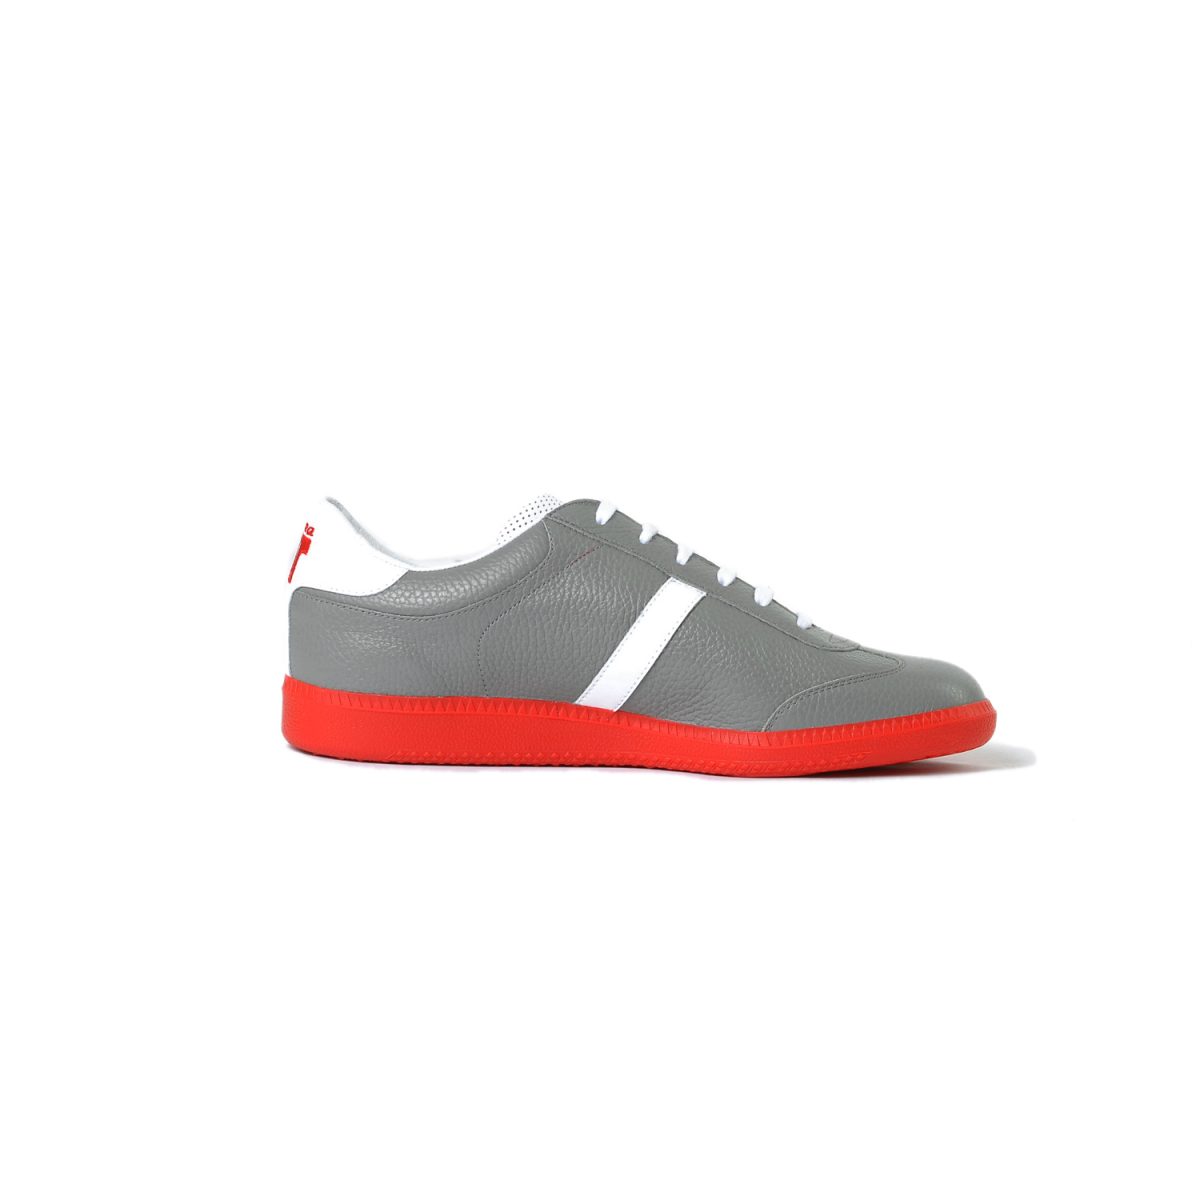 Tisza cipő - Compakt - Szürke-fehér-piros